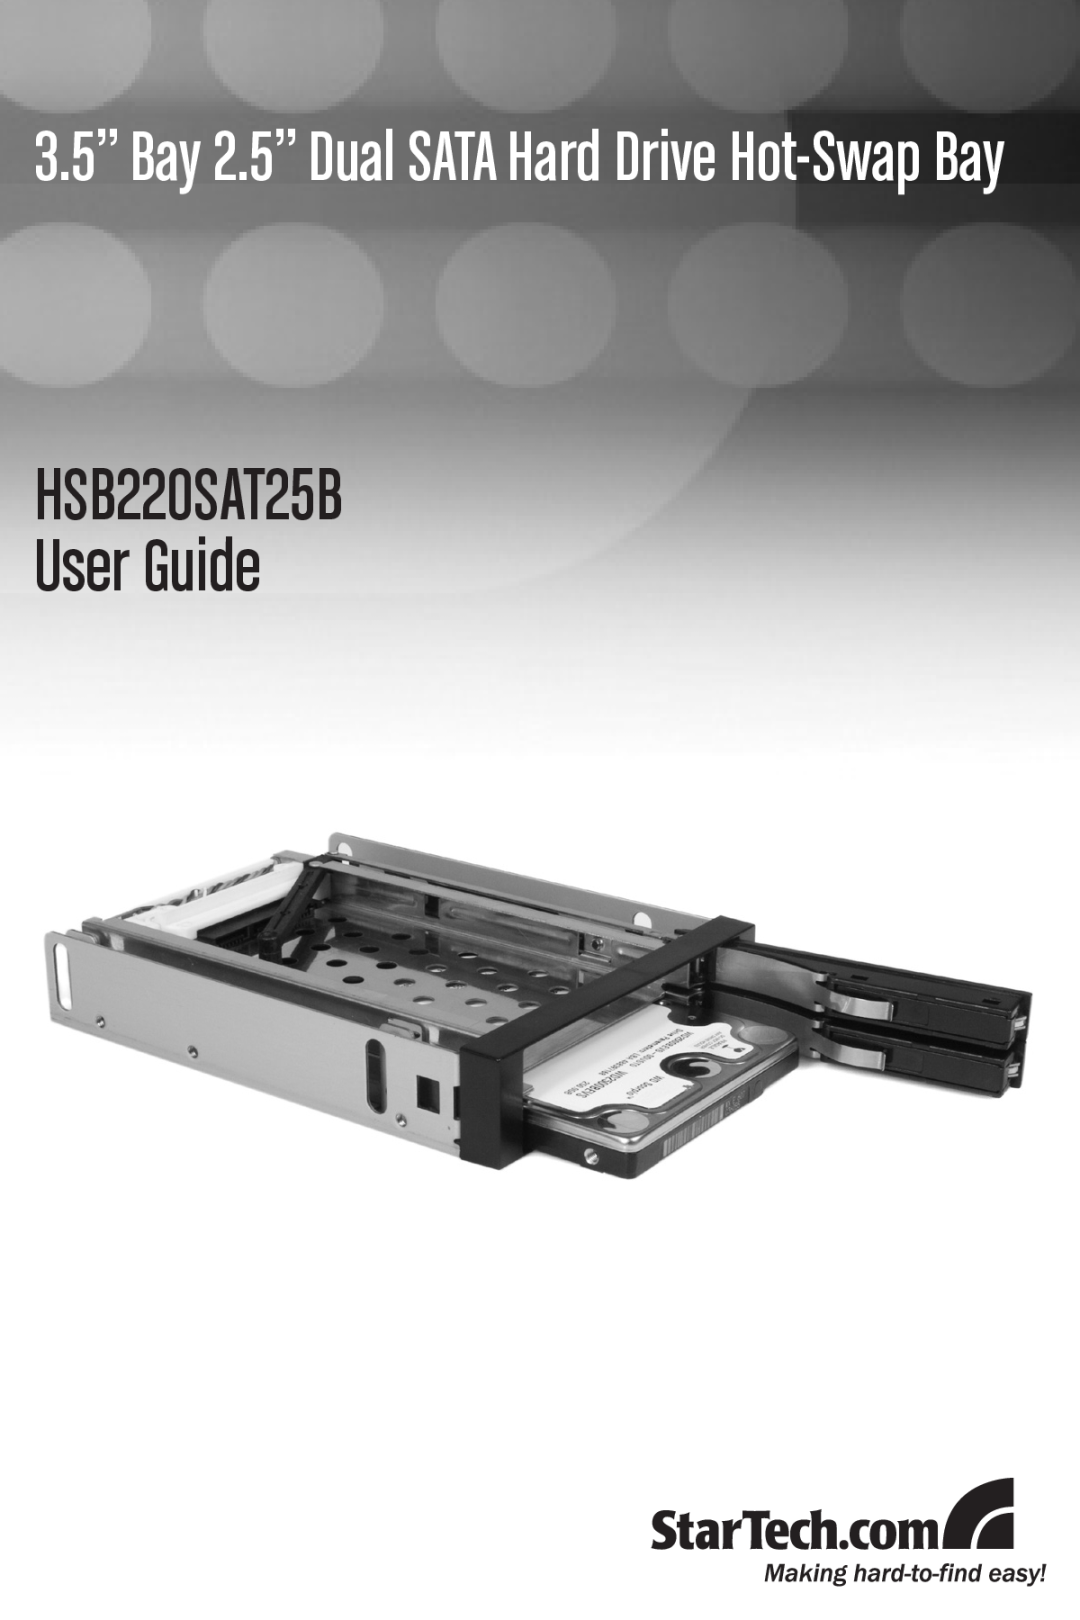 StarTech.com manual HSB220SAT25B User Guide, 3.5” Bay 2.5” Dual SATA Hard Drive Hot-Swap Bay 